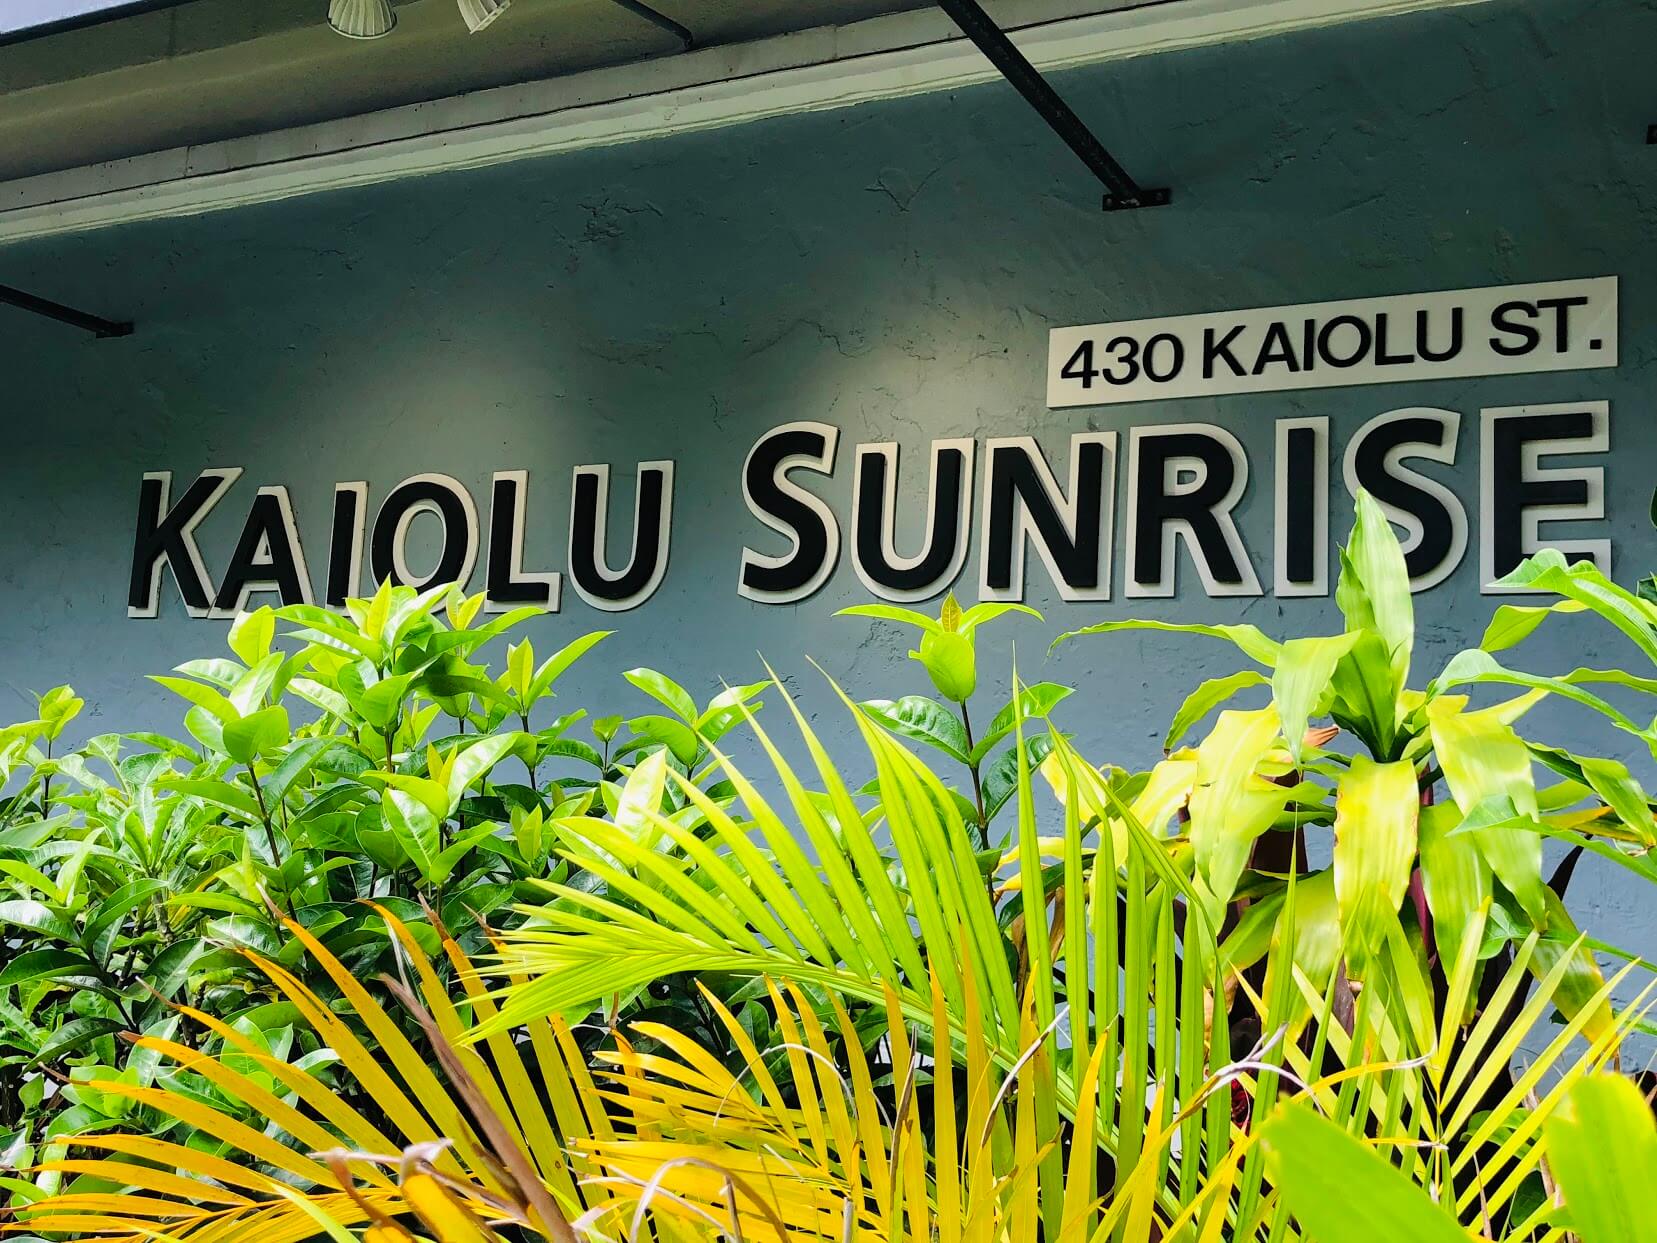 Kaiolu Sunriseの看板